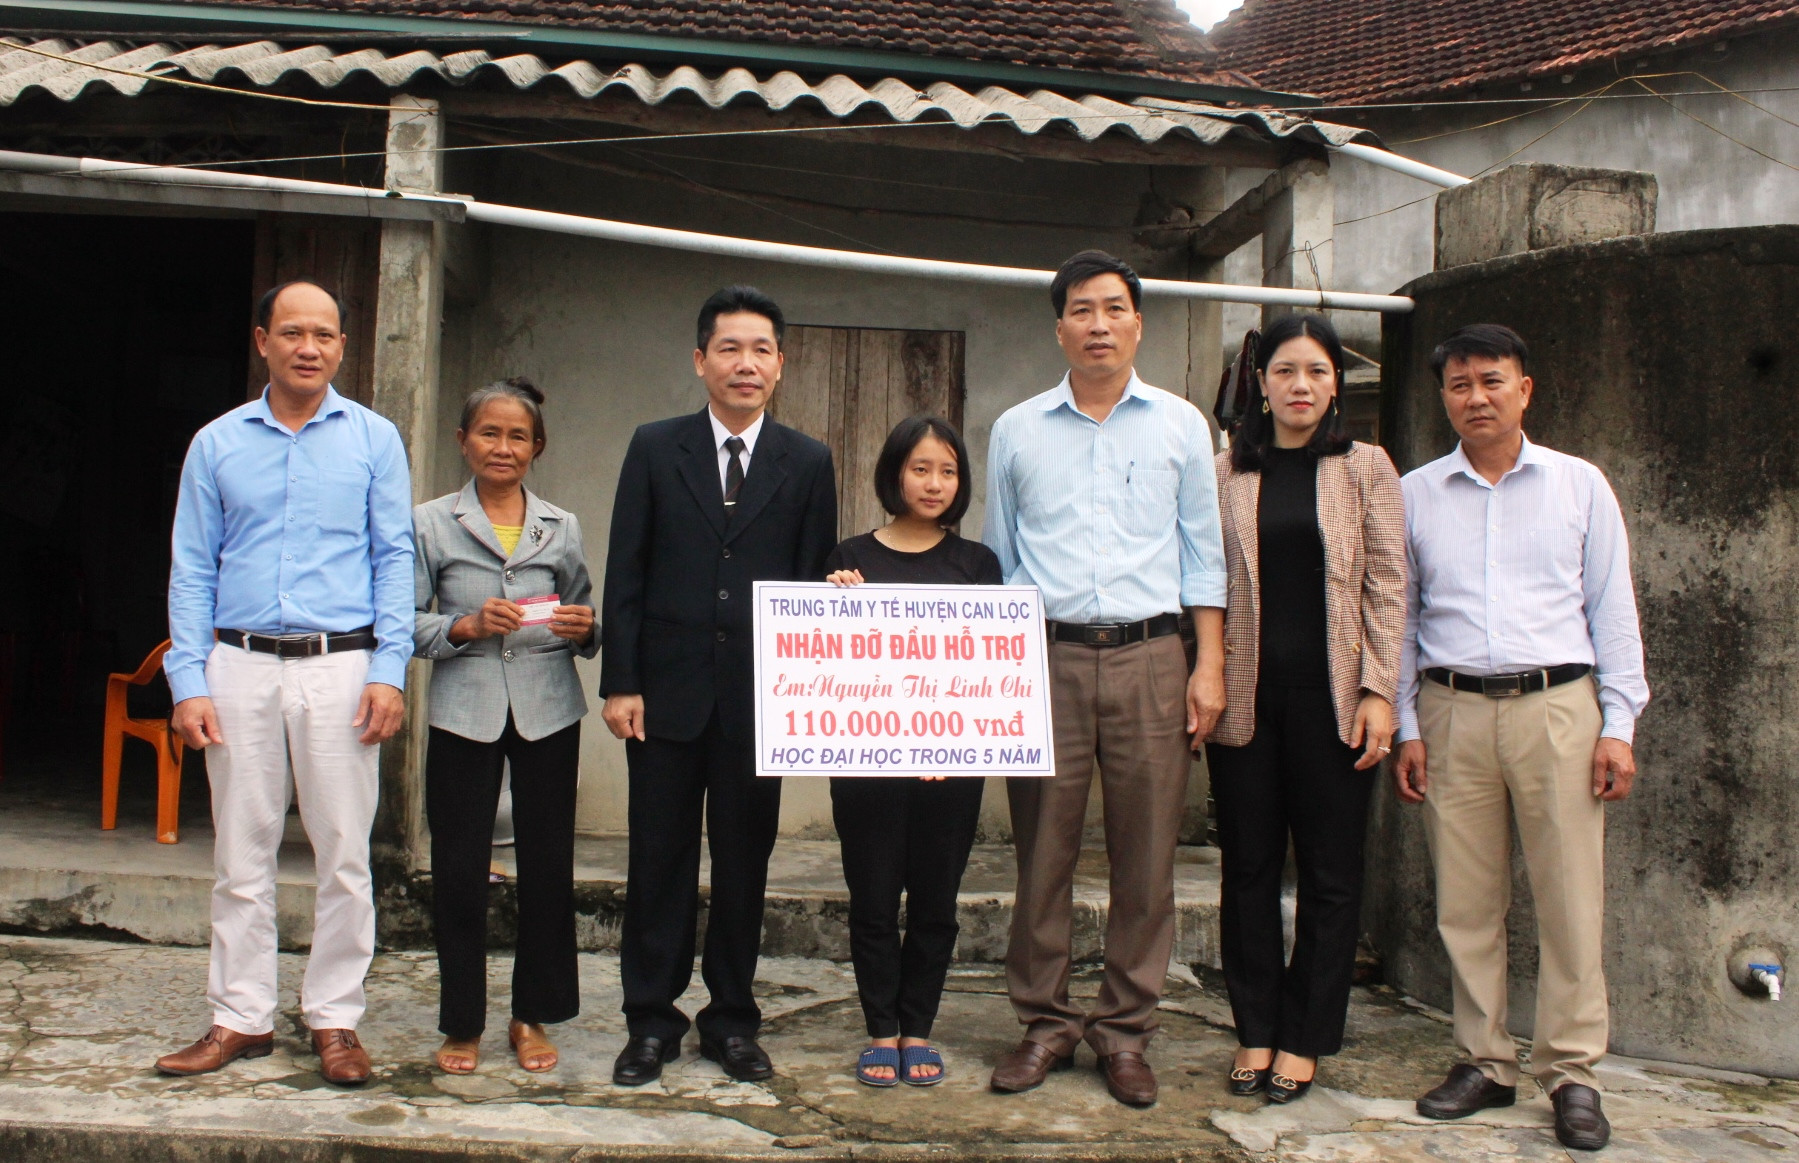 Trung tâm Y tế huyện Can Lộc nhận đỡ đầu nữ sinh Nguyễn Thị Linh Chi.